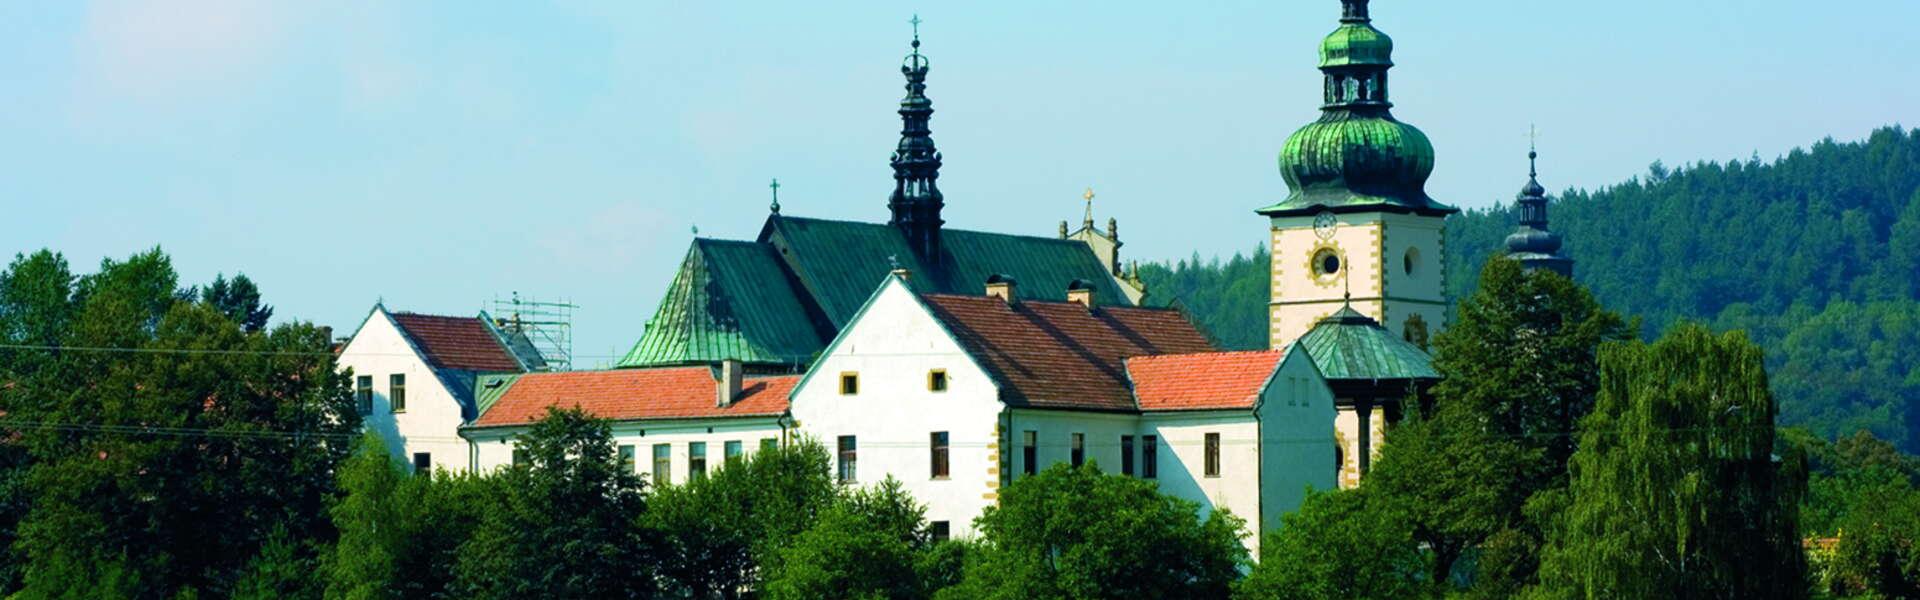 Image: Stary Sącz